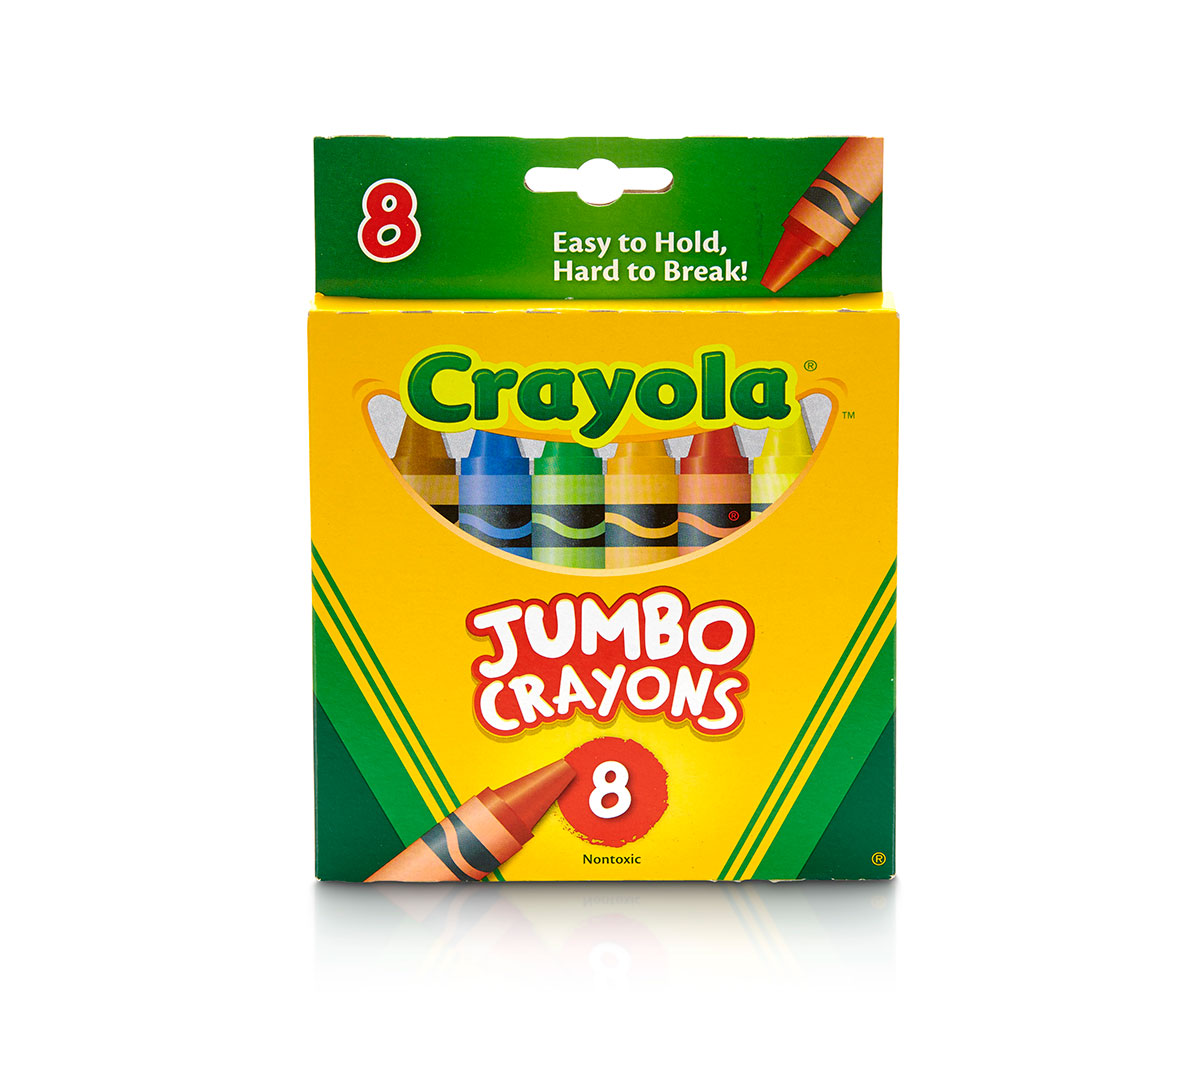 Crayola DryErase Bright Crayons - Shop Crayons at H-E-B